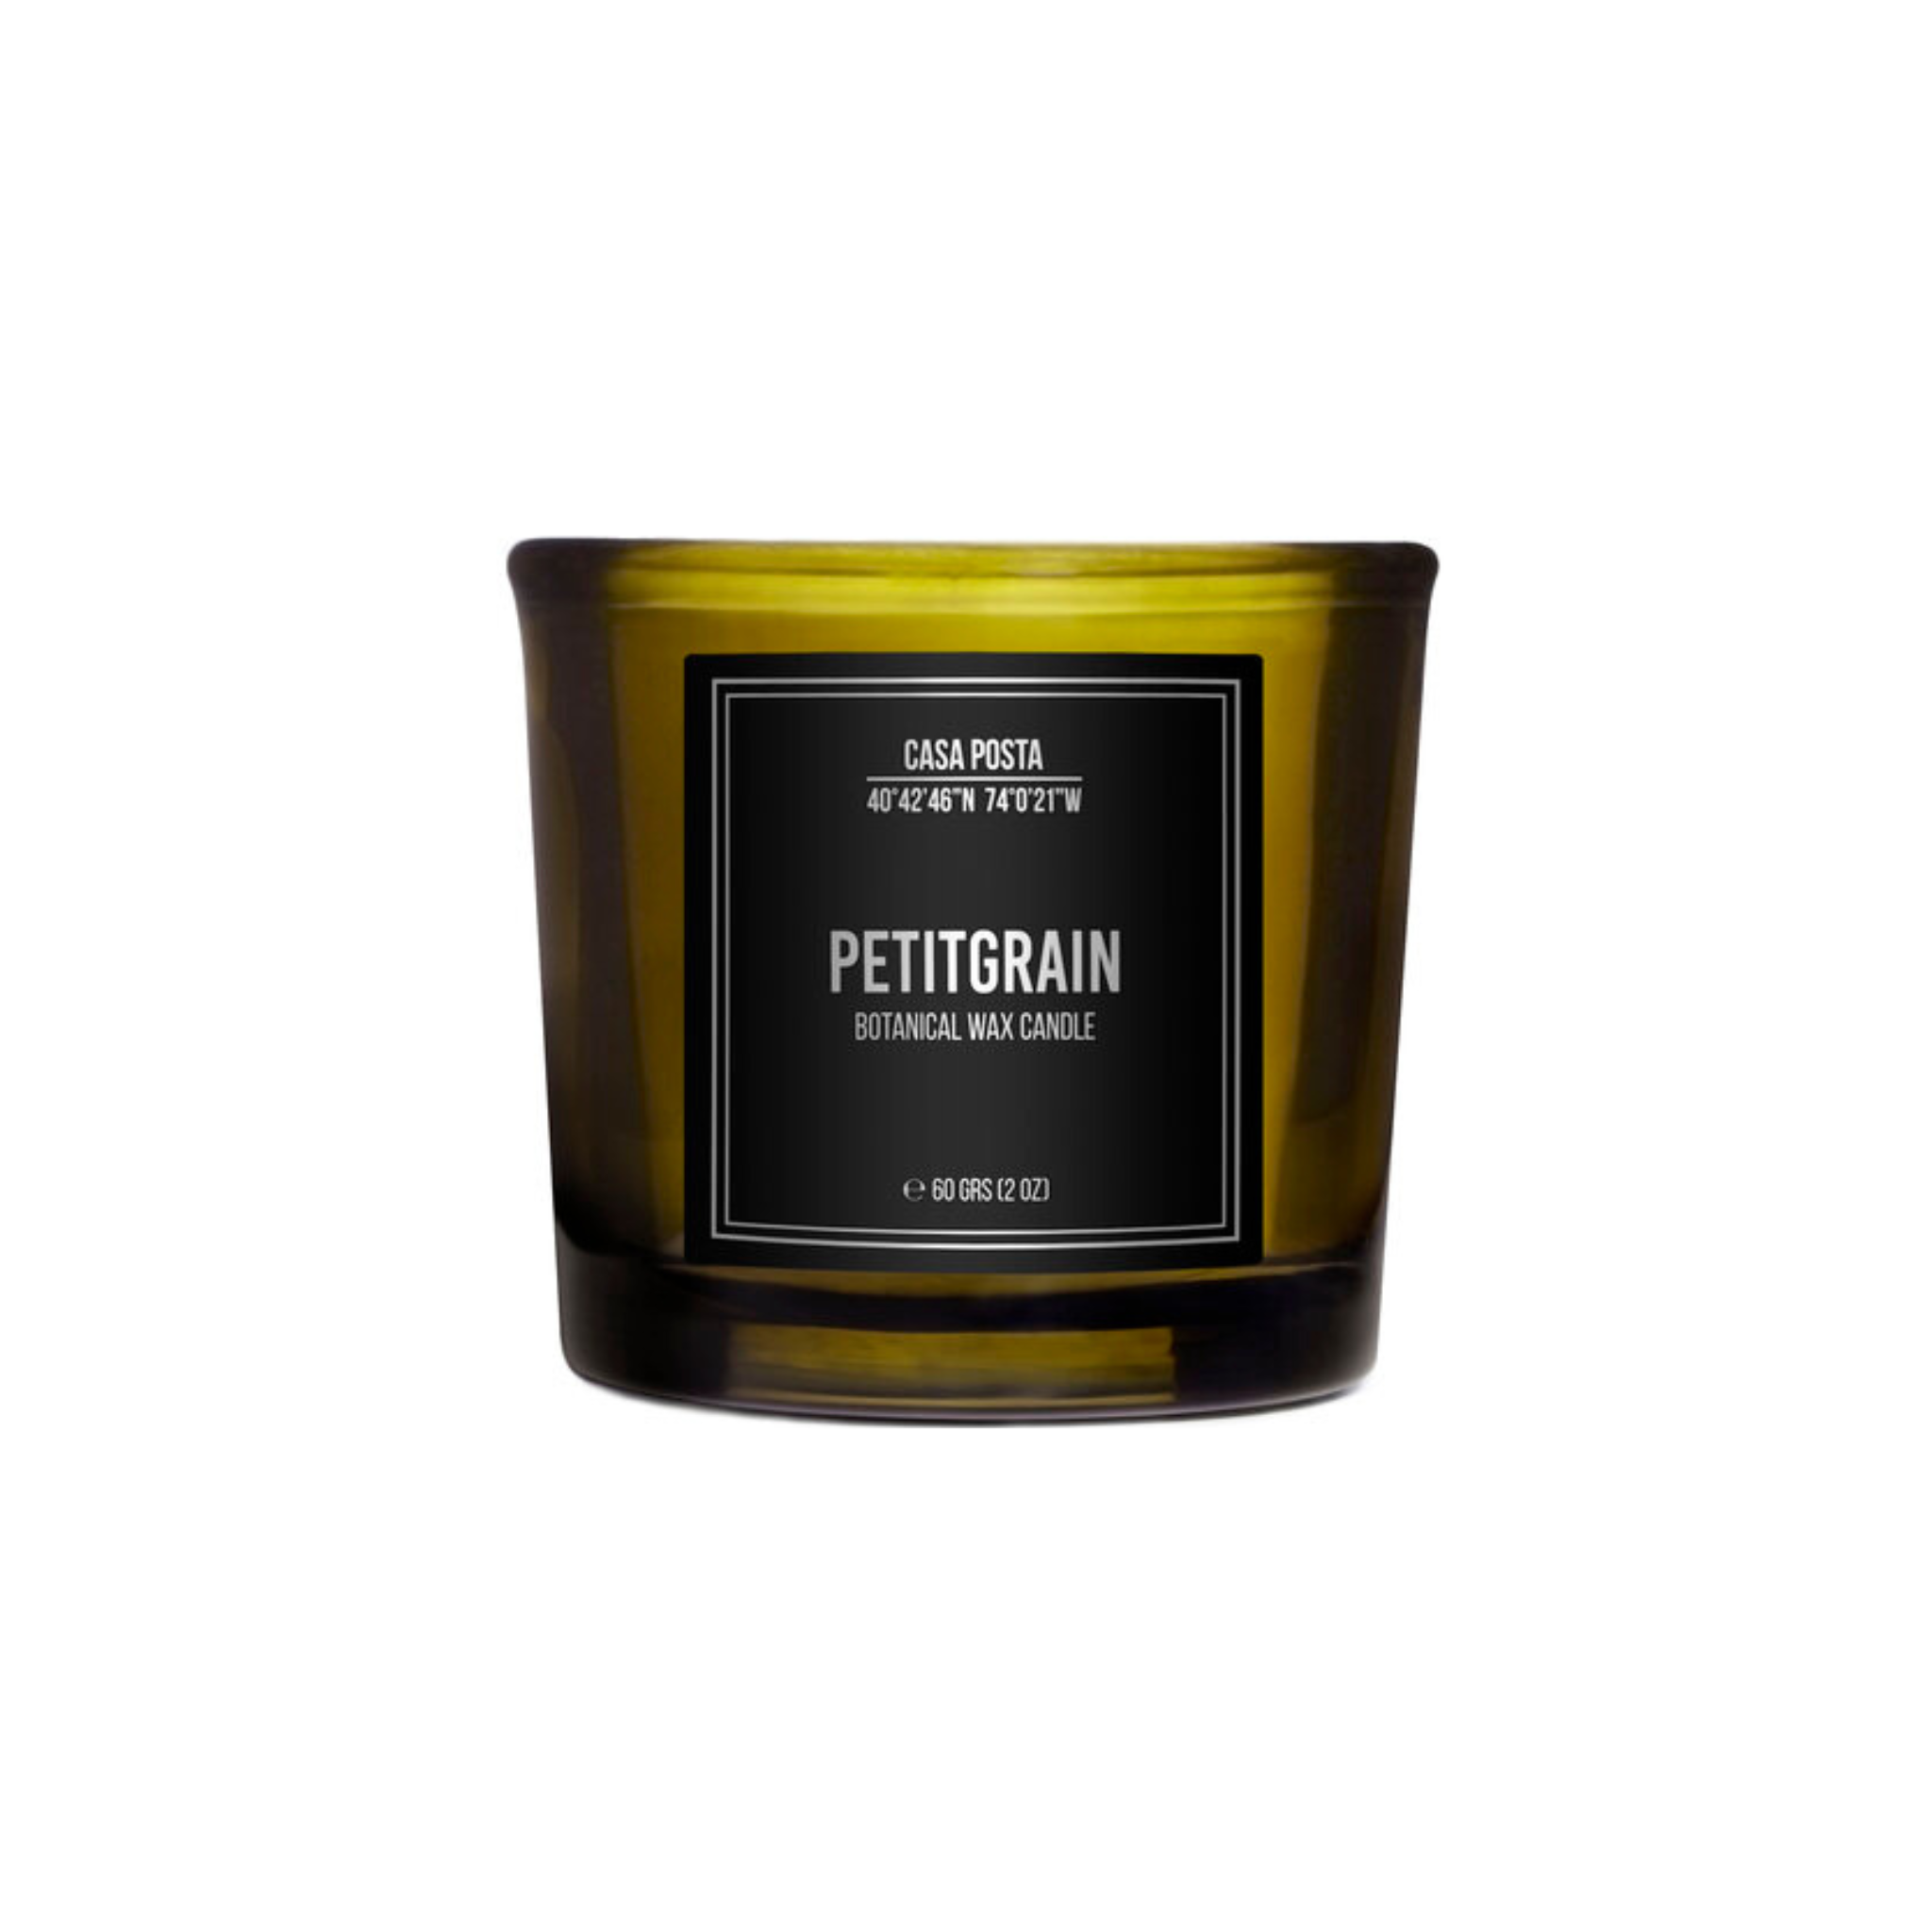 Casa Posta Petitgrain scented votive candle in a black glass container